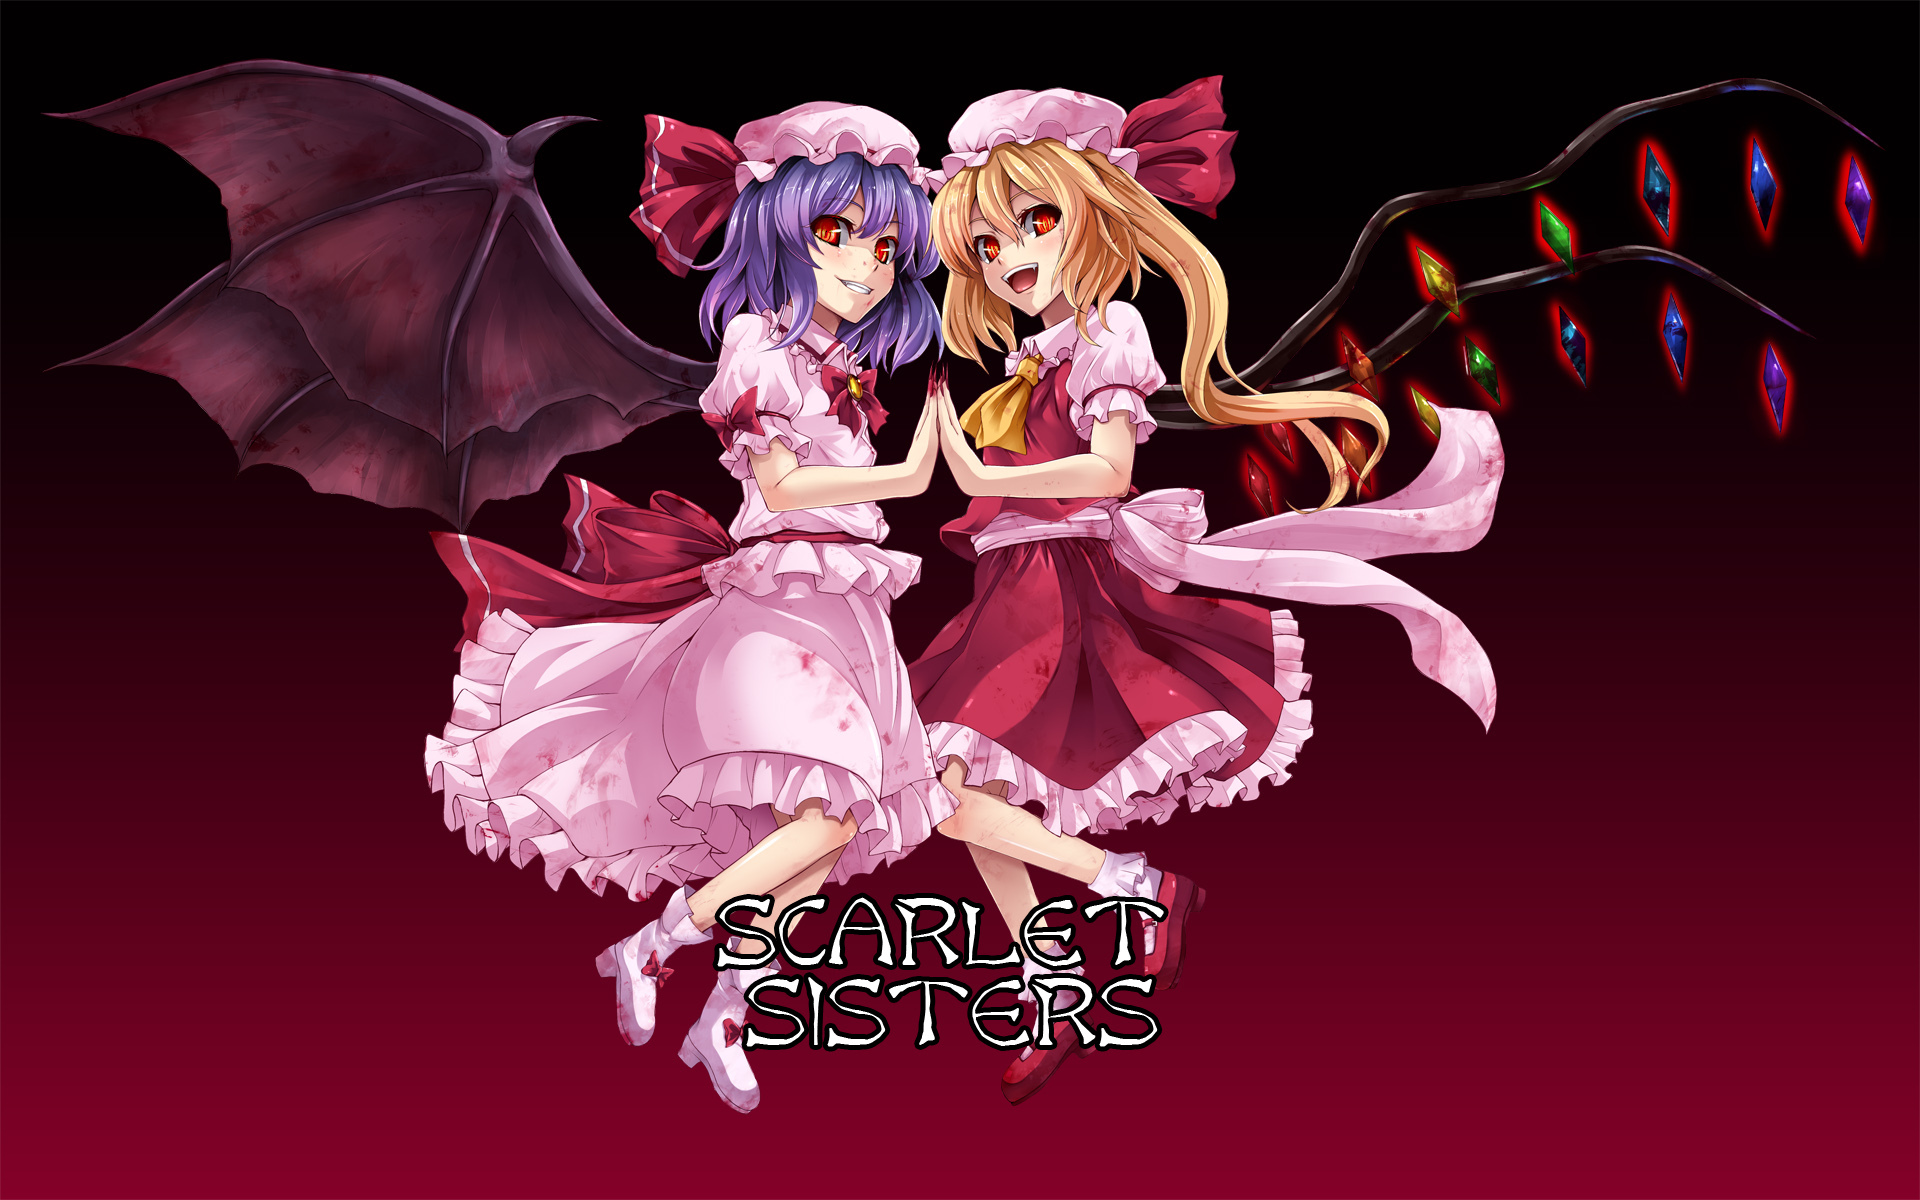 Touhou, vampires, Flandre Scarlet, Remilia Scarlet, Embodiment of Scarlet Devil, games - desktop wallpaper